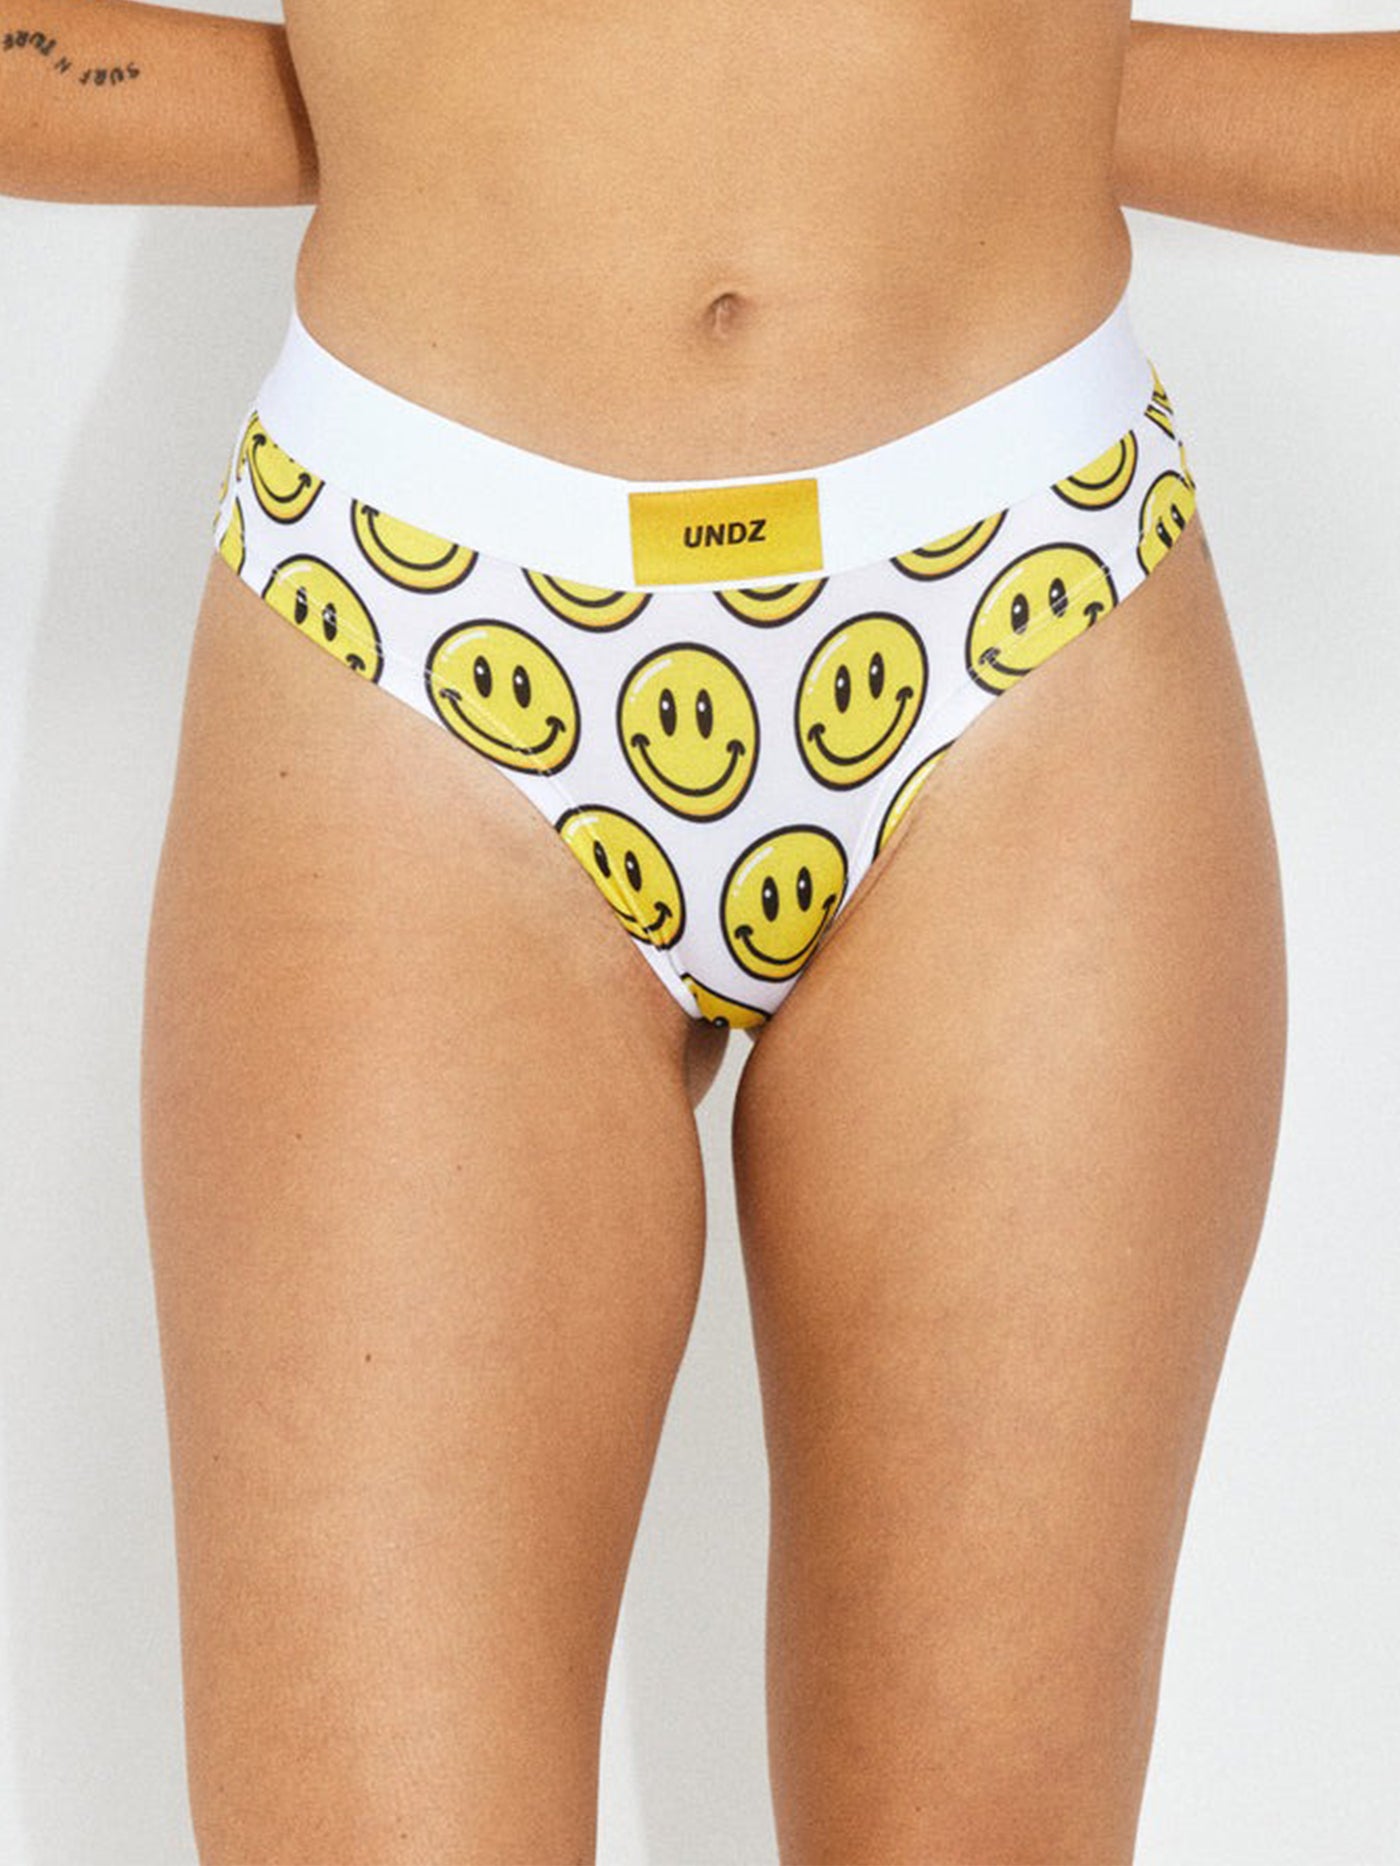 Undz Cheeky Smiley Underwear